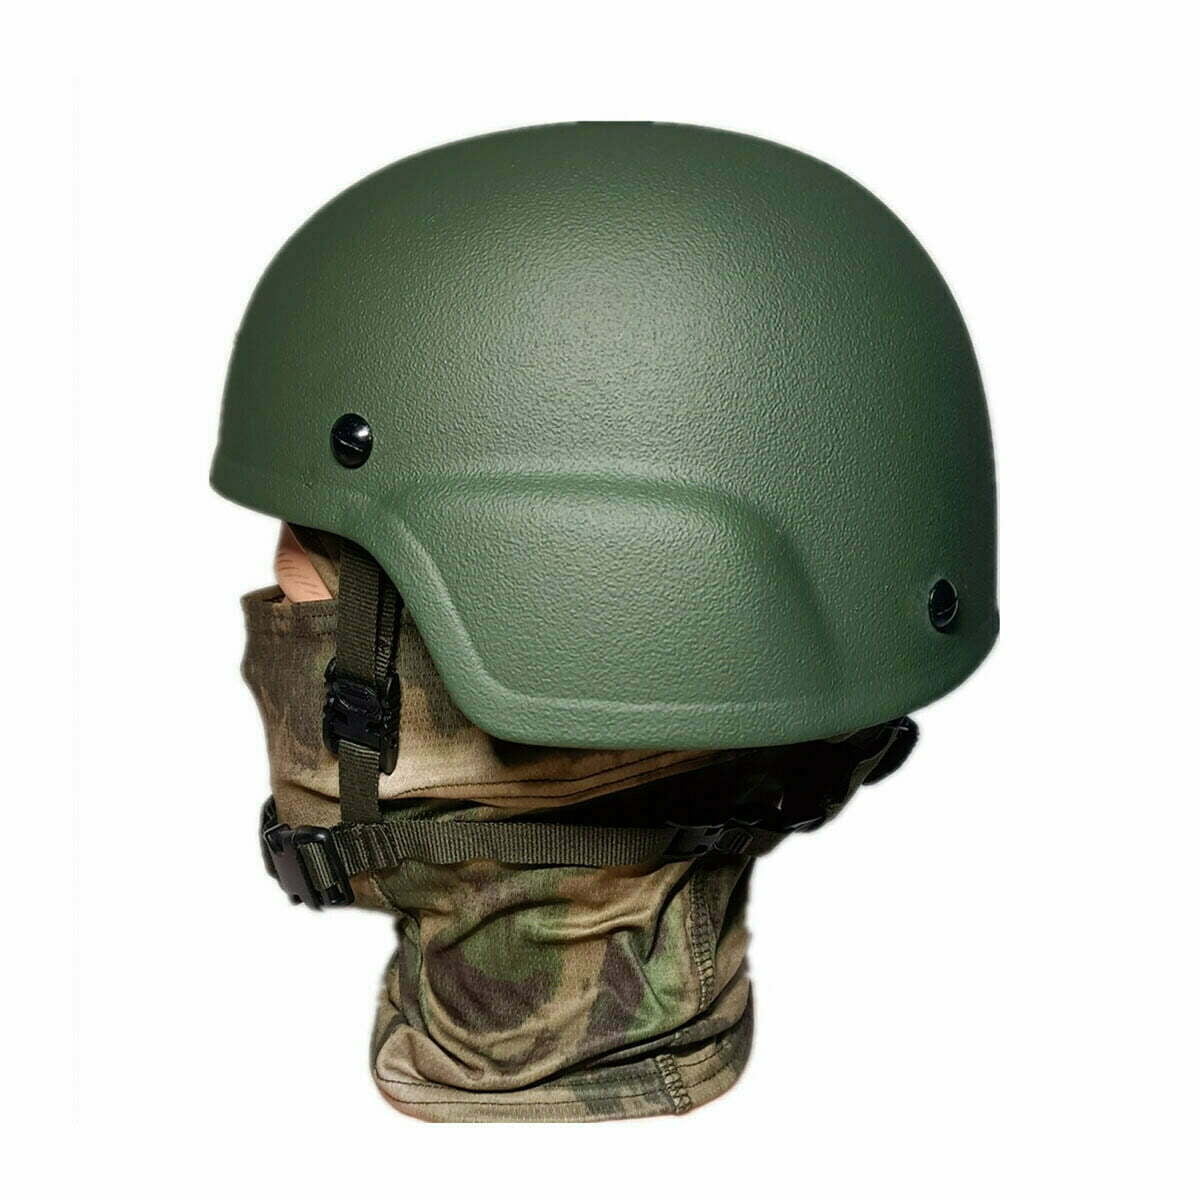 Military Helmet, IIIA Tactical Ballistic Helmet, Polish Kevlar Helmet,  Green – Kask wojskowy balistyczny, hełm taktyczny kevlar